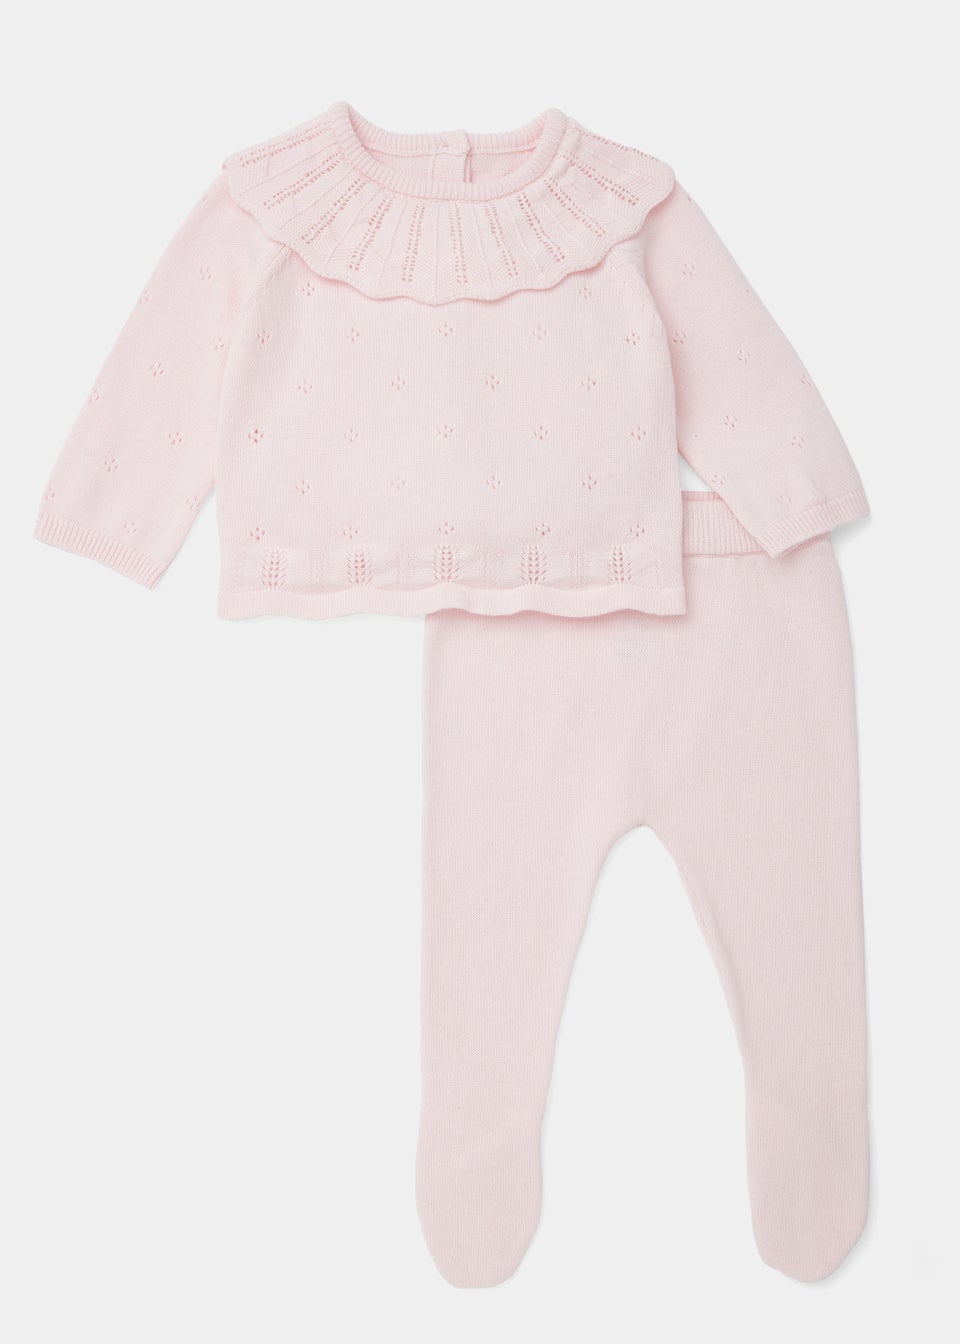 Baby 2 Piece Pink Layette Knitted Set (Newborn-12mths)